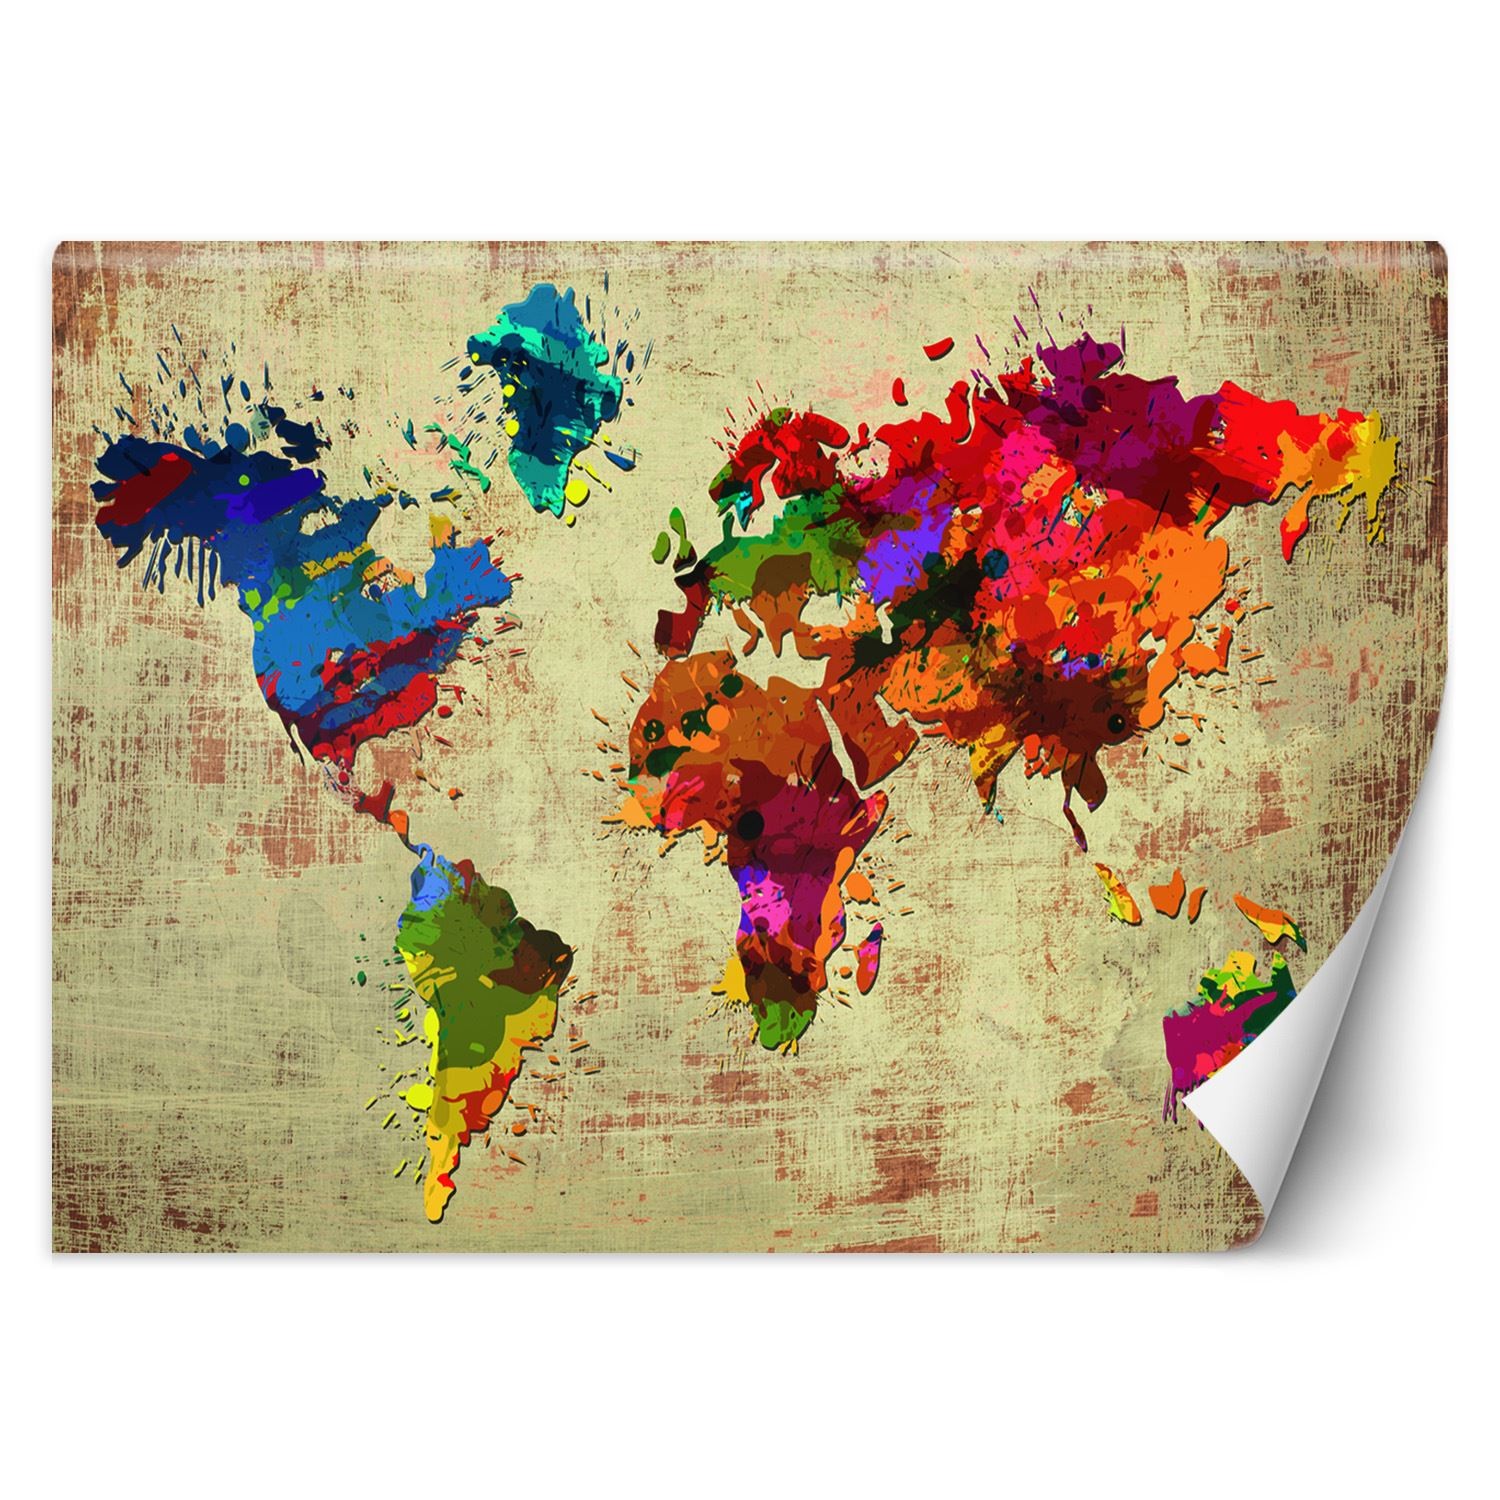 Trend24 – Behang – Wereldkaart Aquarel – Behangpapier – Wereldkaart Wanddecoratie – Behang Woonkamer – 250x175x2 cm – Incl. behanglijm